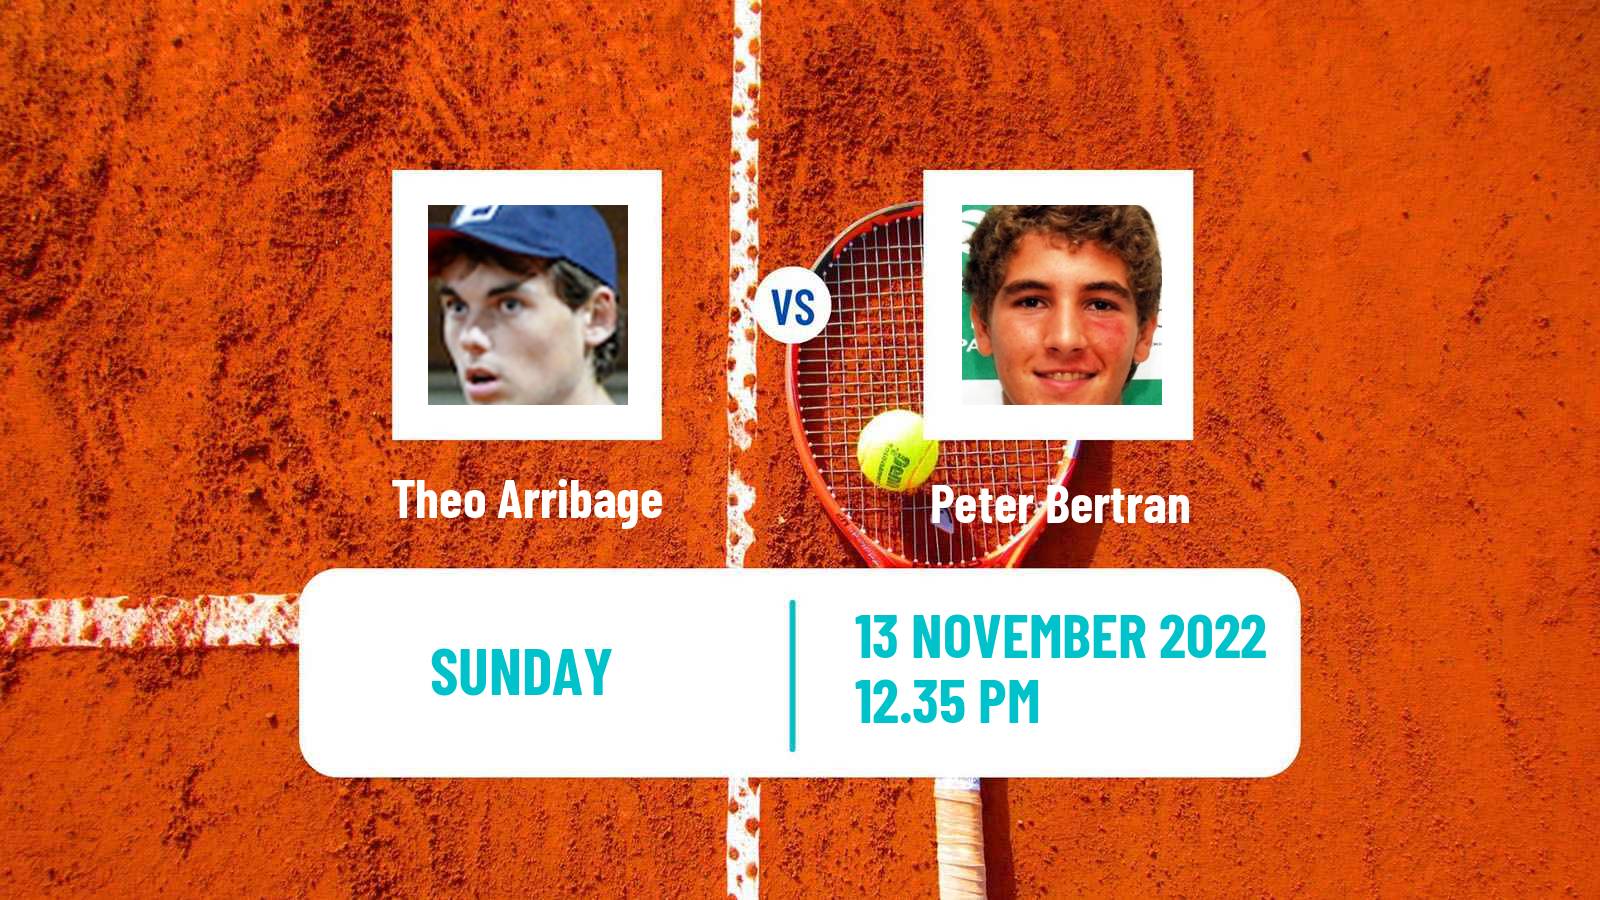 Tennis ATP Challenger Theo Arribage - Peter Bertran